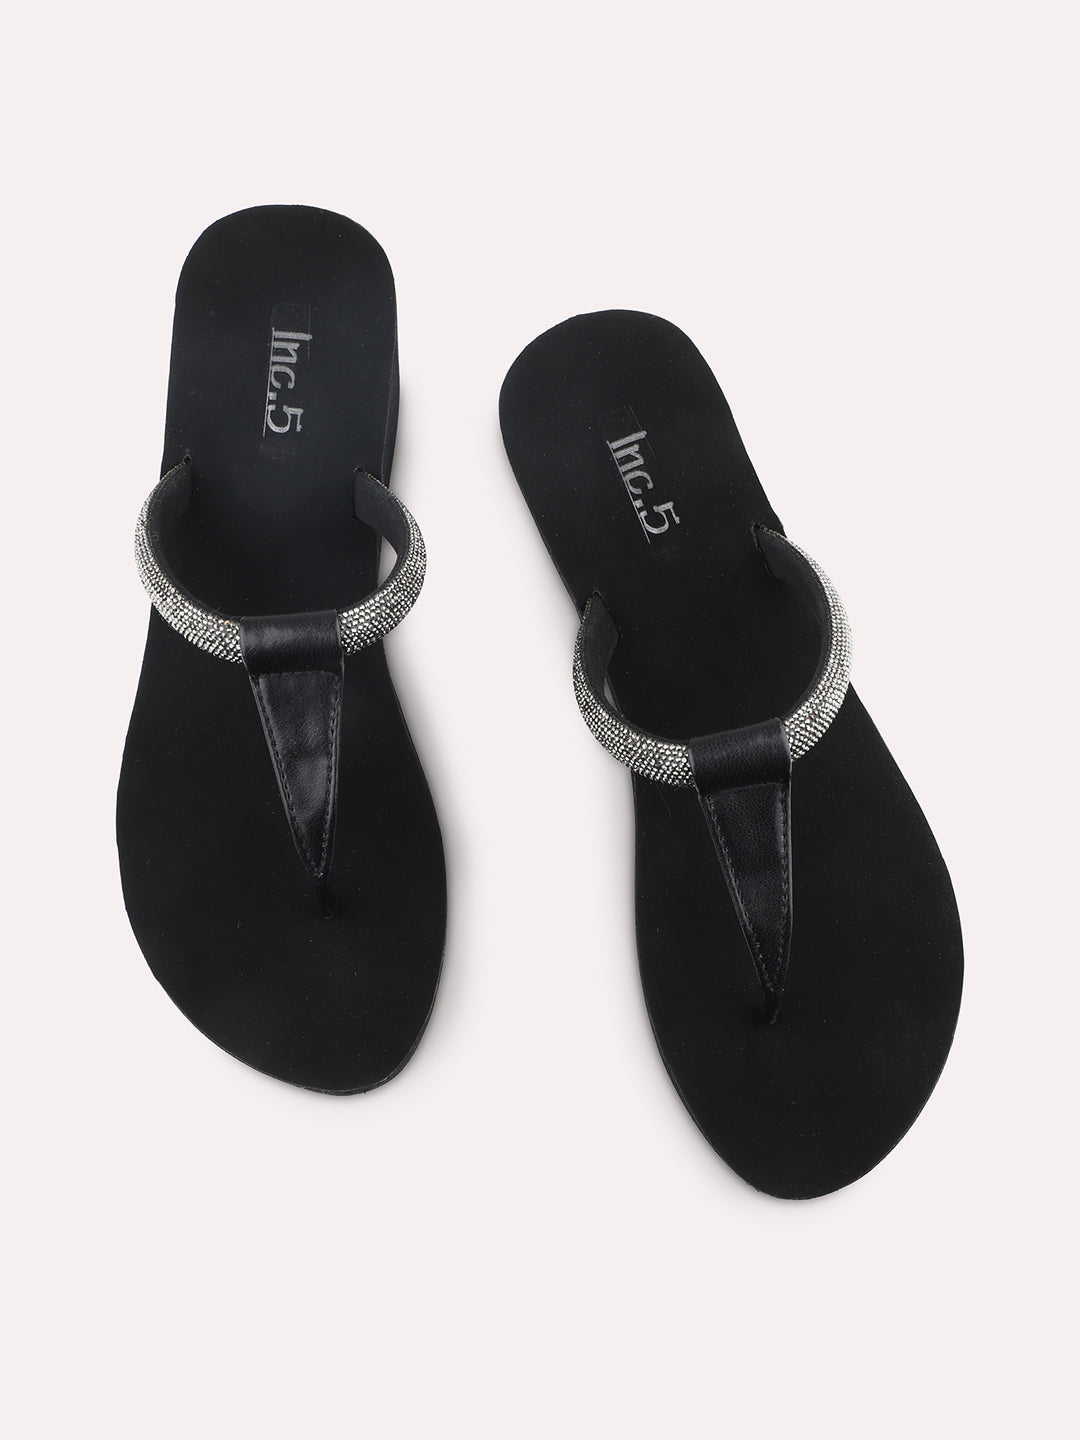 Women Black Embellished Wedges Sandals